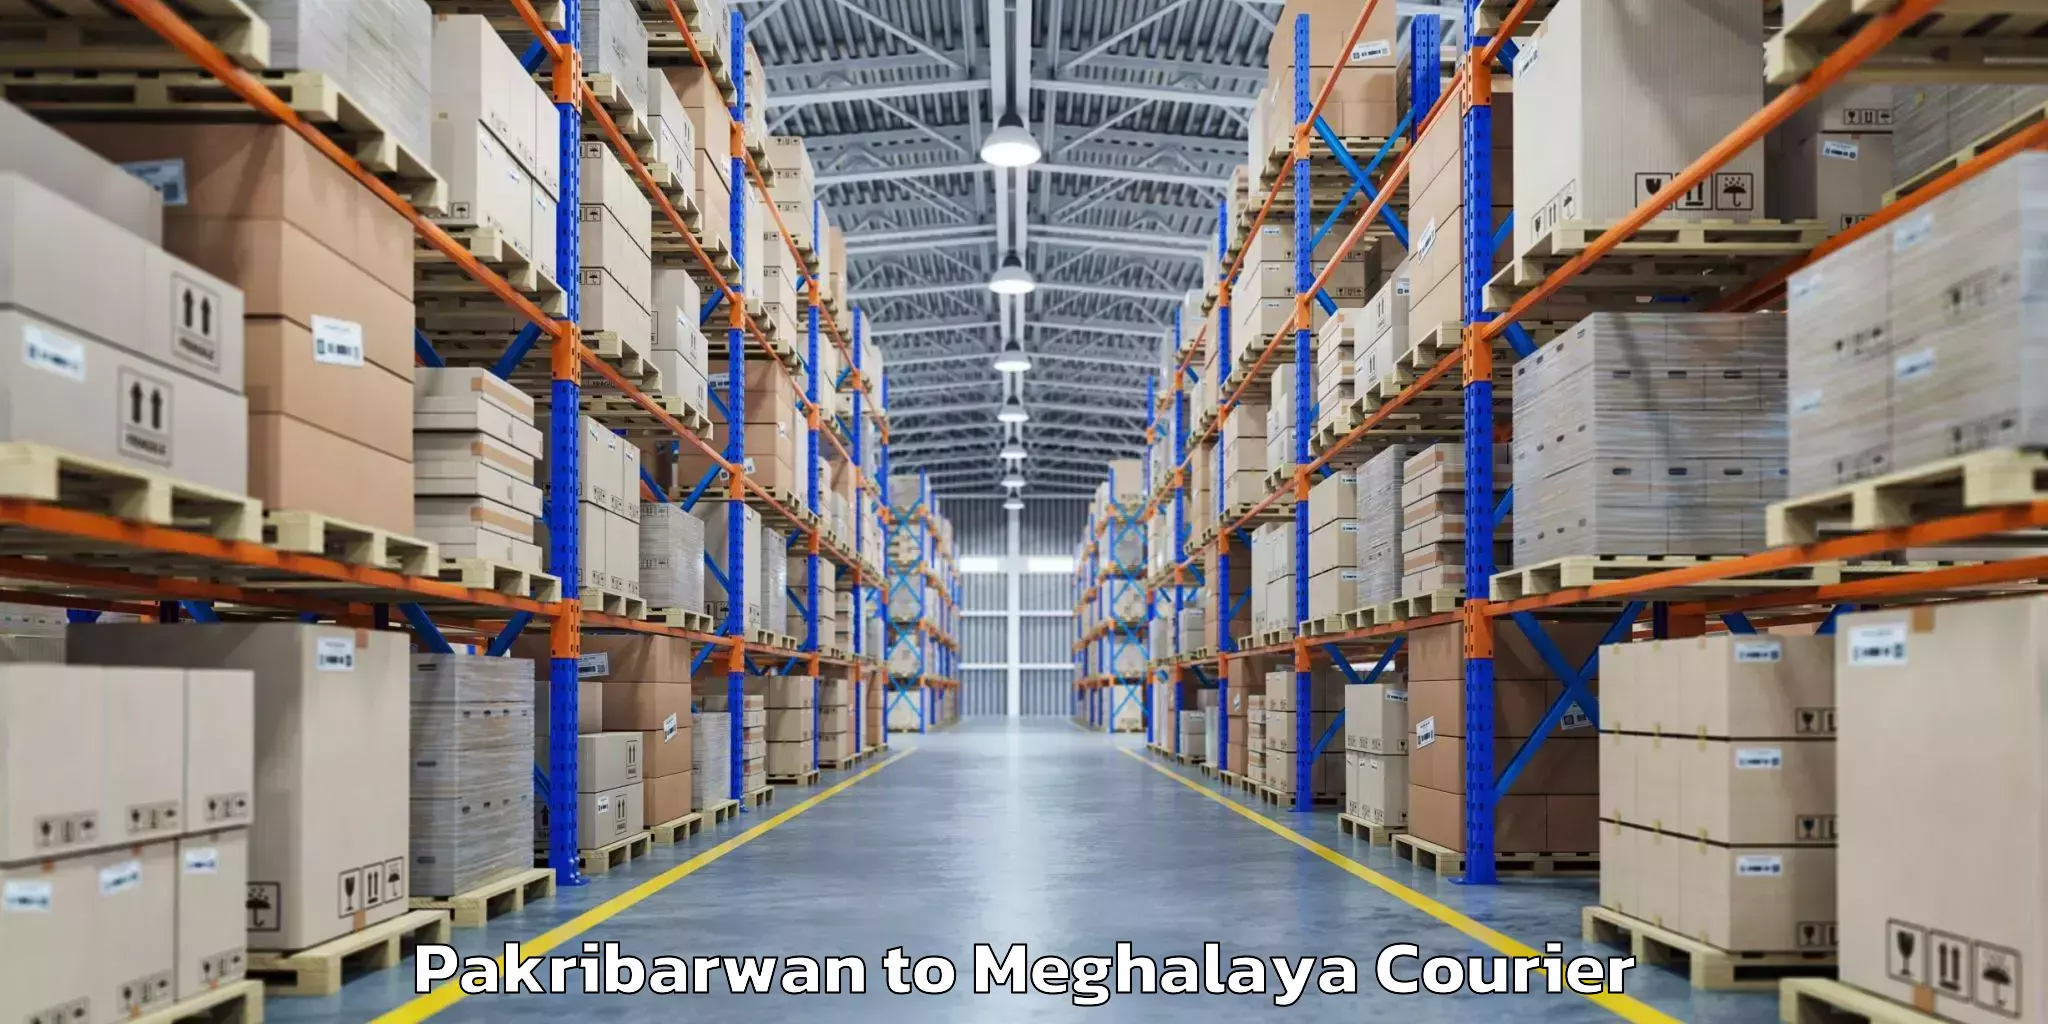 Luggage delivery network Pakribarwan to Meghalaya